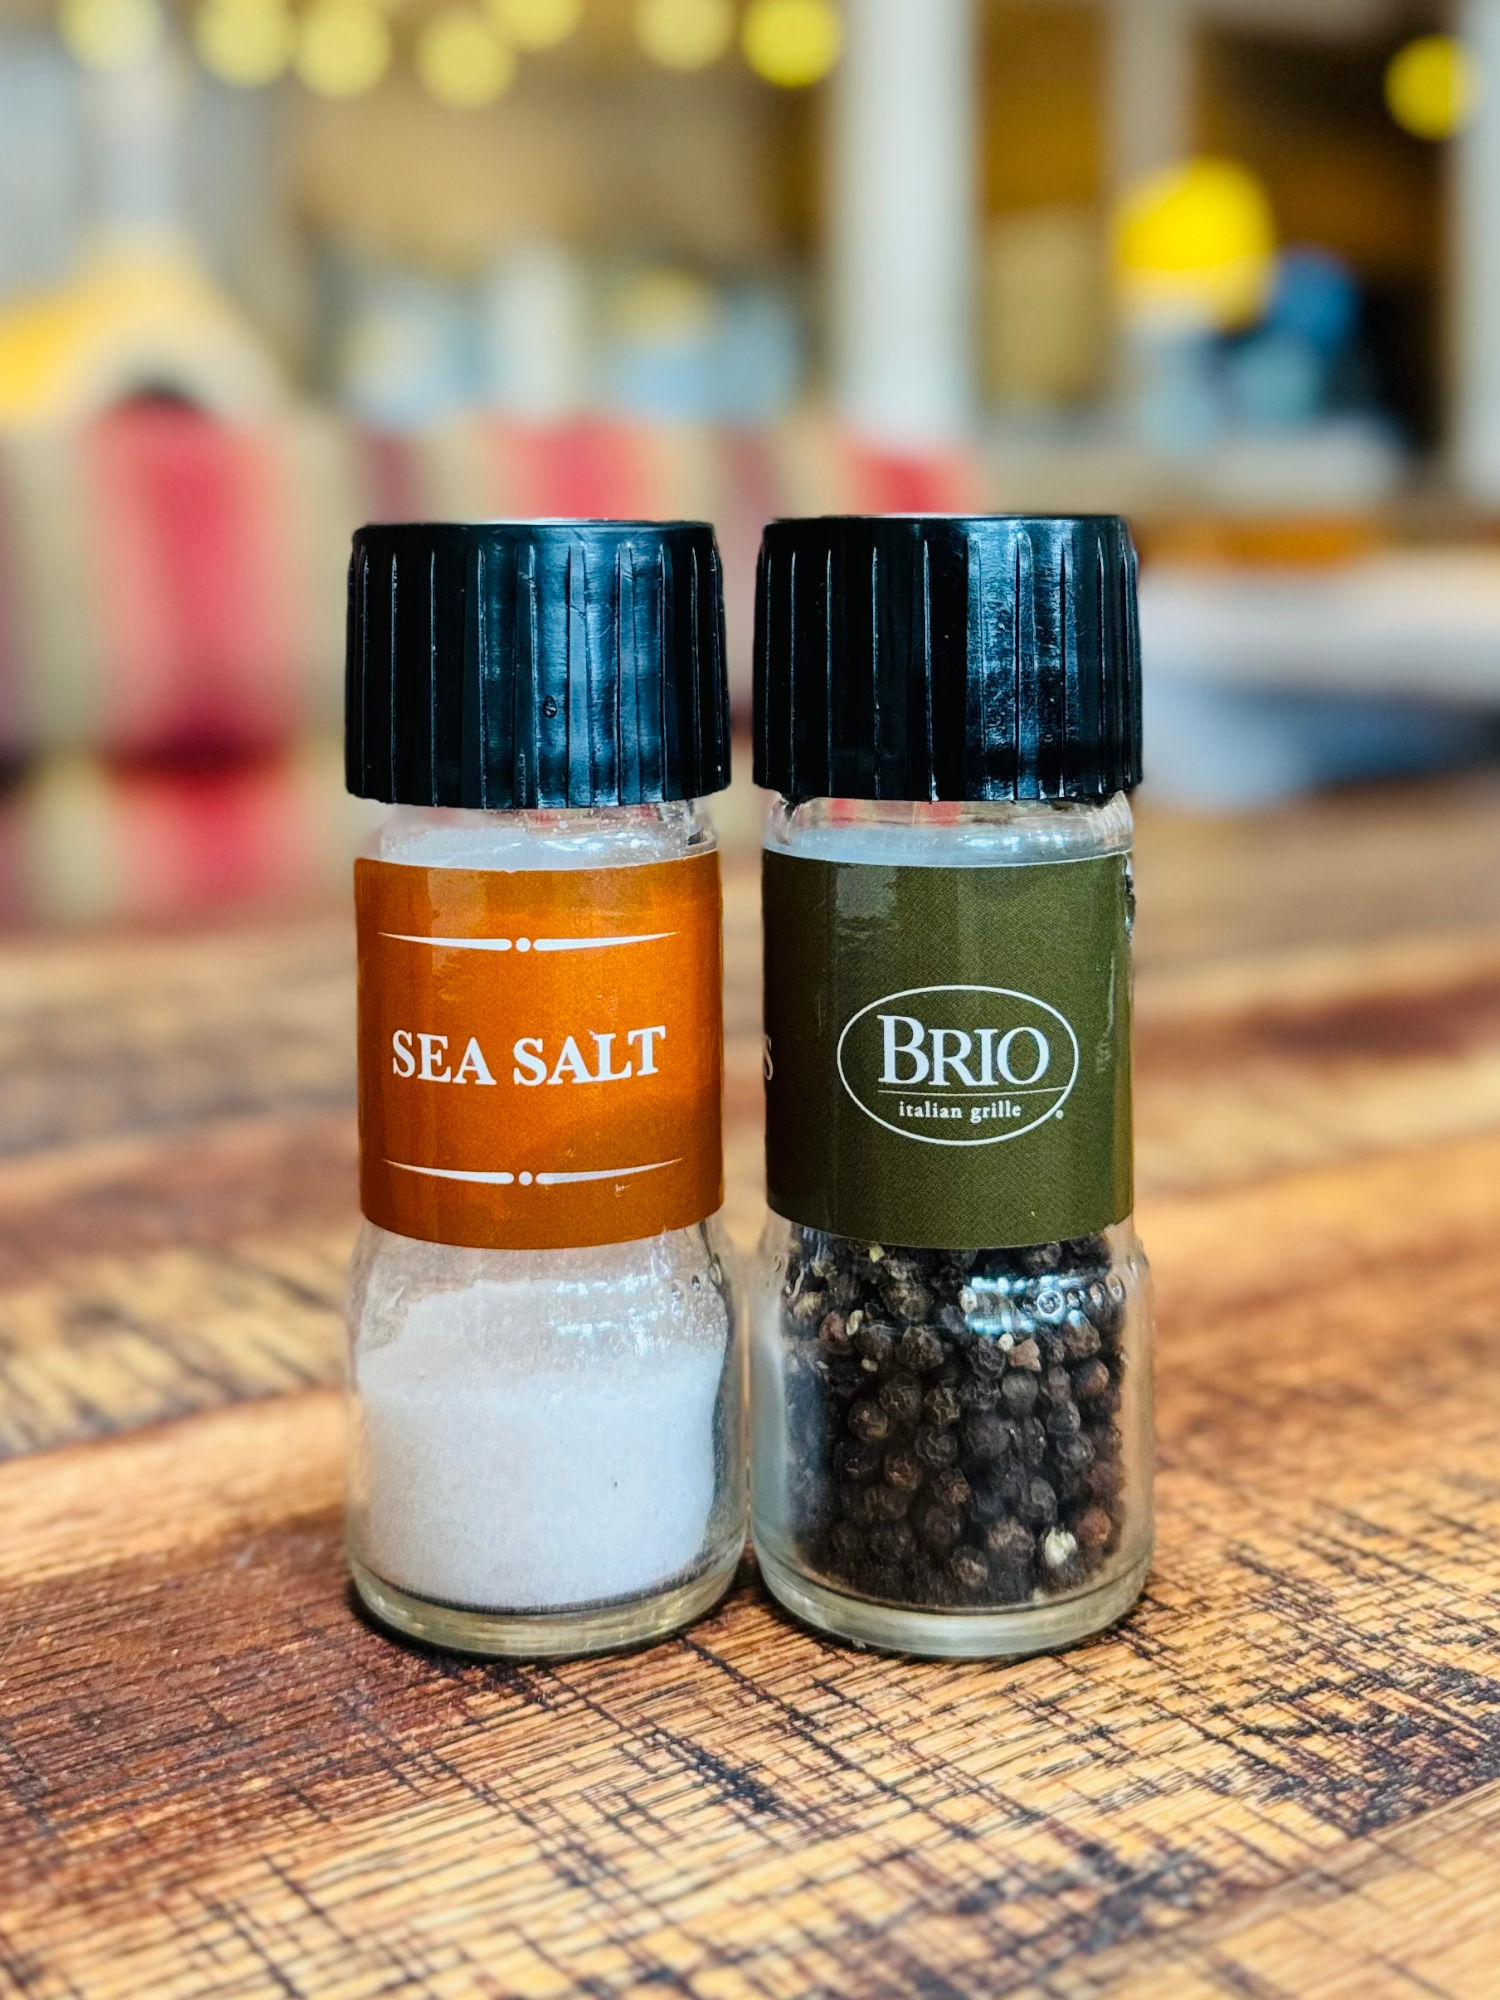 Brio Italian Grille Sea Salt